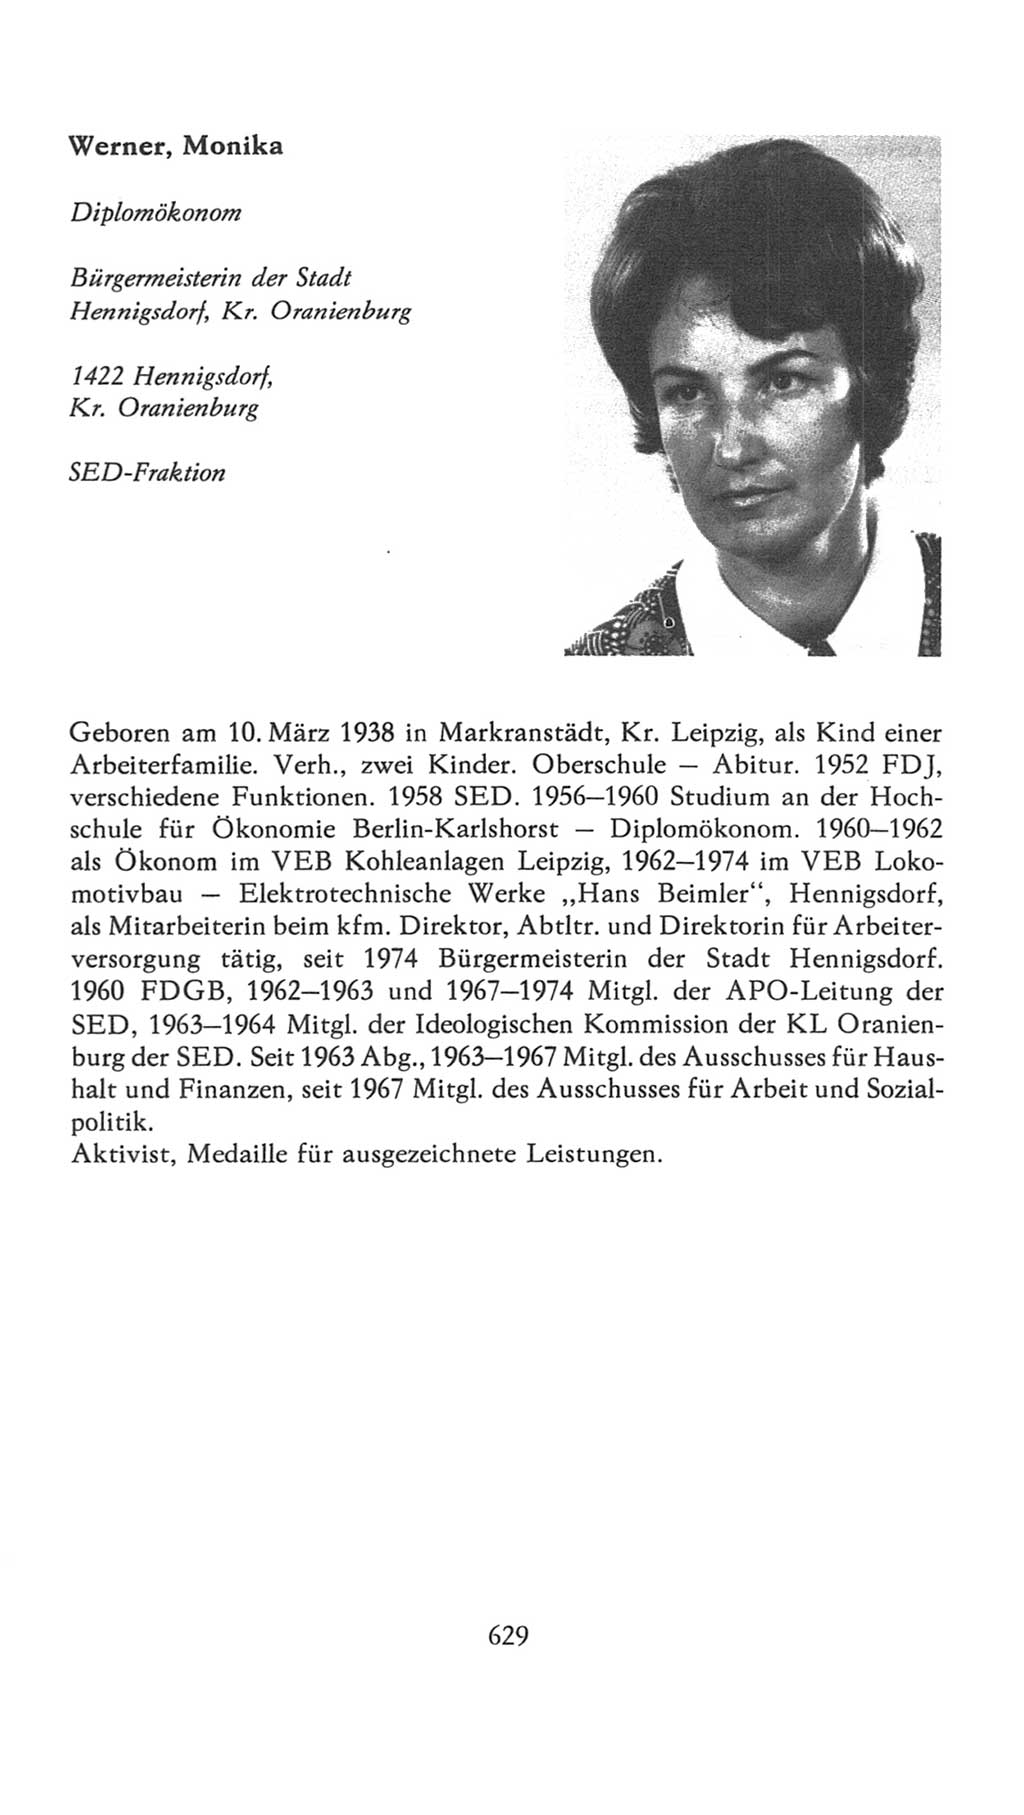 Volkskammer (VK) der Deutschen Demokratischen Republik (DDR), 7. Wahlperiode 1976-1981, Seite 629 (VK. DDR 7. WP. 1976-1981, S. 629)